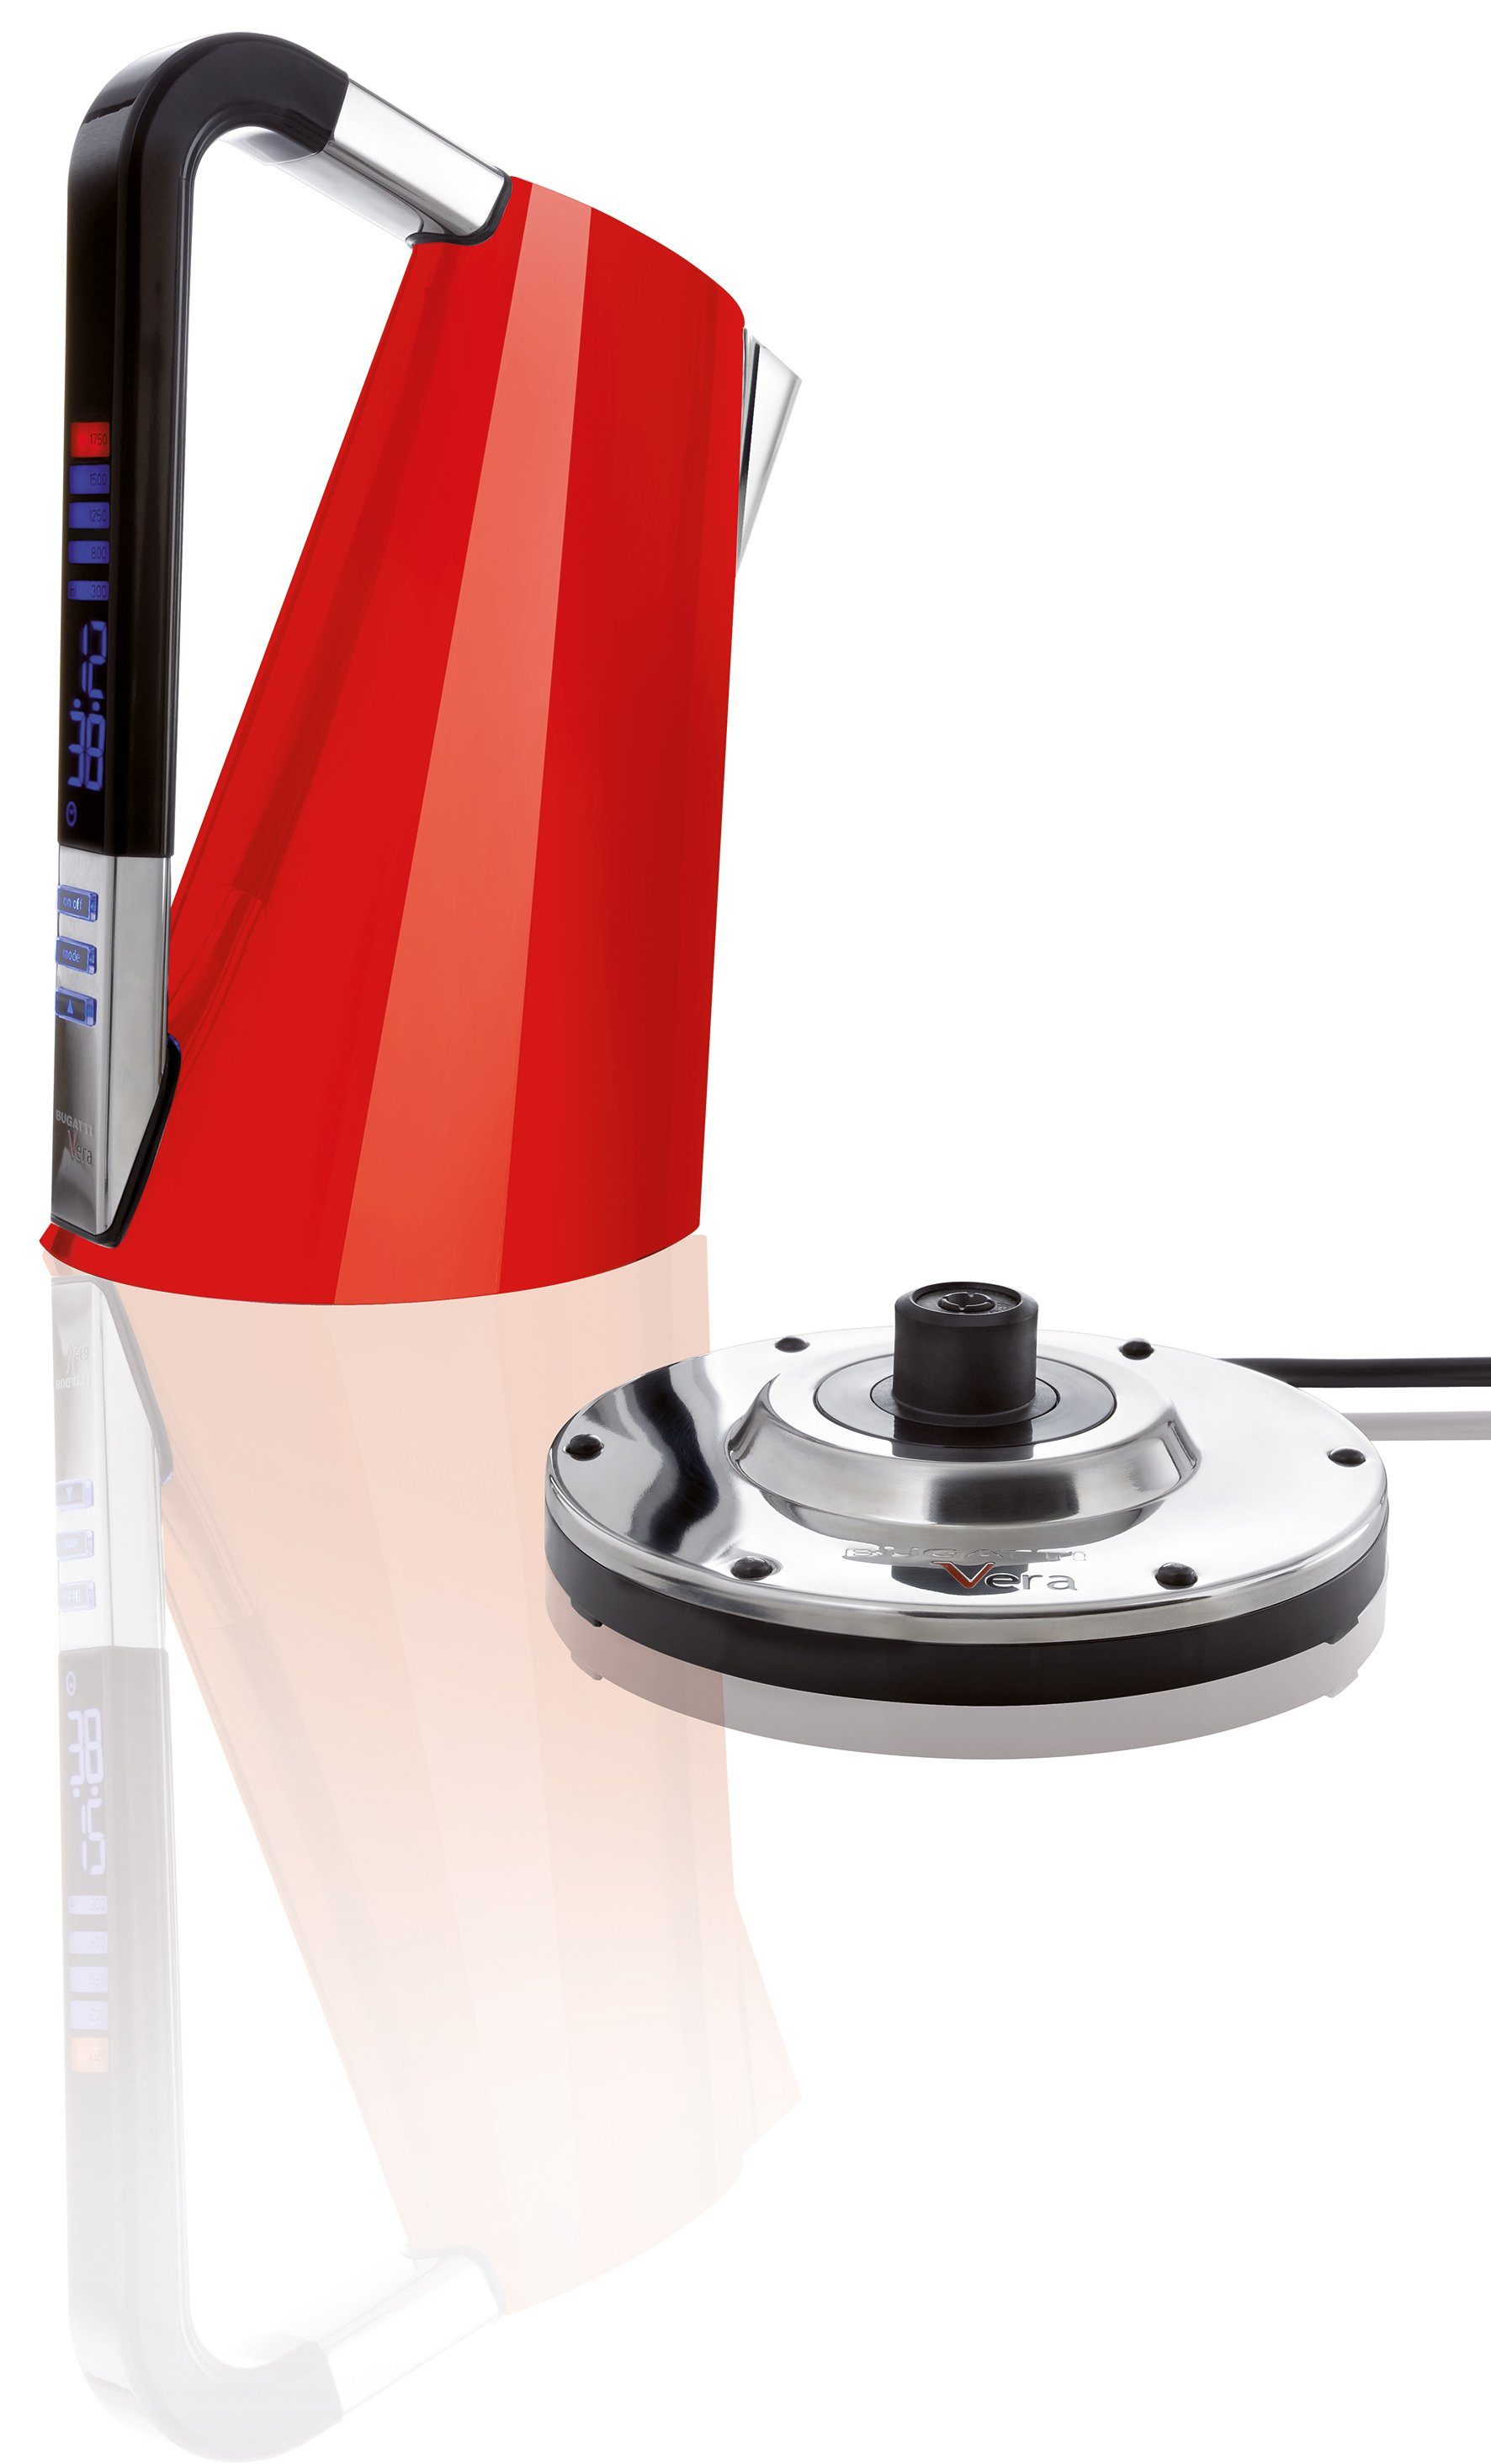 Casa Bugatti Wasserkocher Vera Wasserkocher mit Temperaturregler und Timer Rot